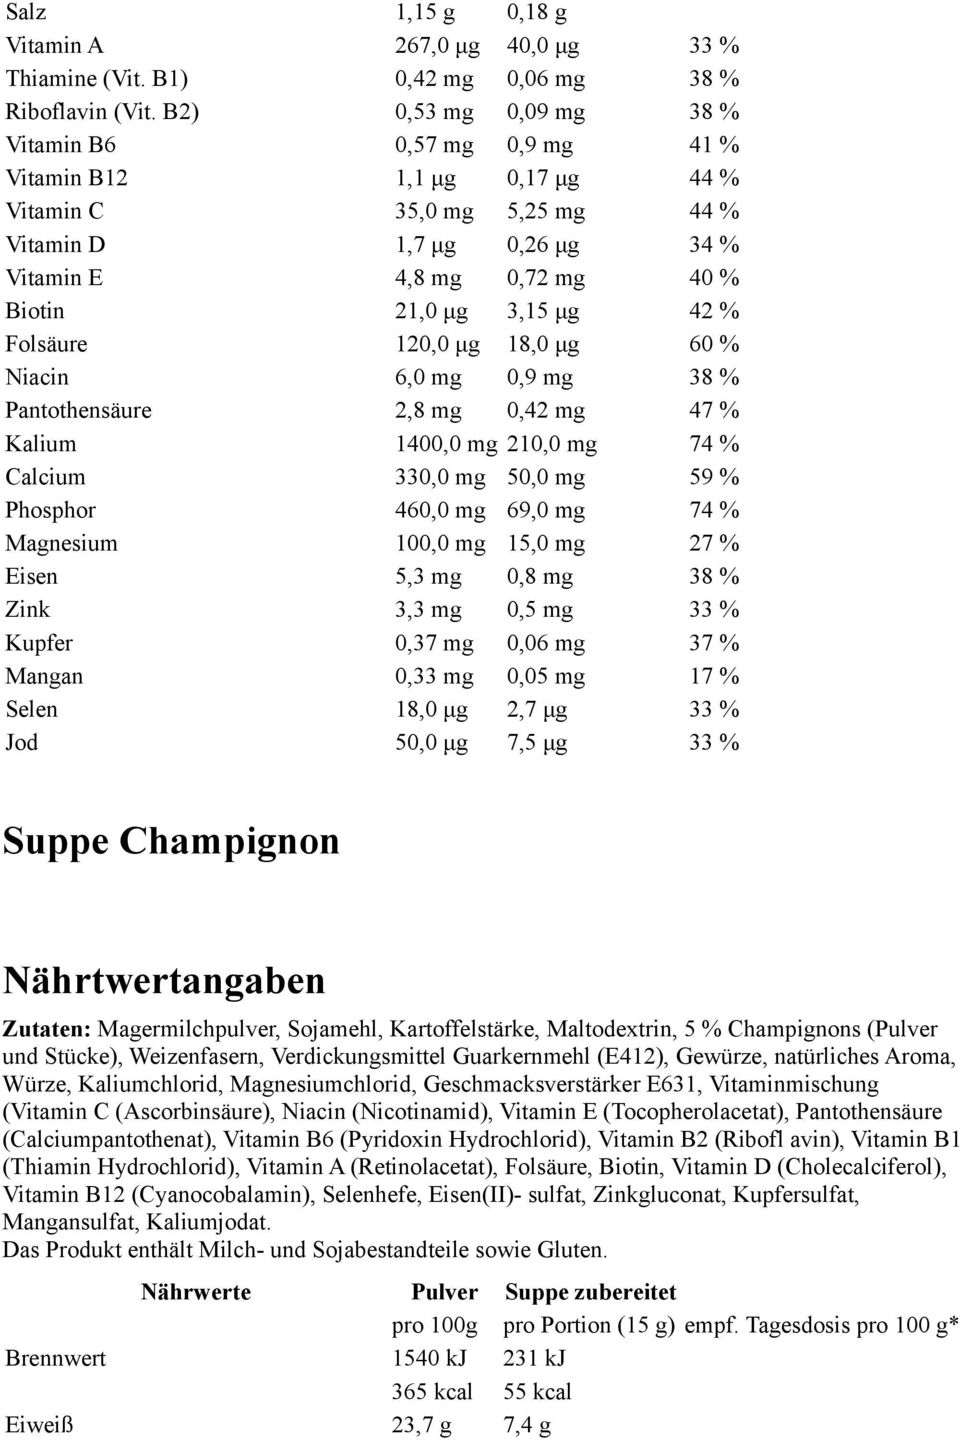 μg 42 % Folsäure 120,0 μg 18,0 μg 60 % Niacin 6,0 mg 0,9 mg 38 % Pantothensäure 2,8 mg 0,42 mg 47 % Kalium 1400,0 mg 210,0 mg 74 % Calcium 330,0 mg 50,0 mg 59 % Phosphor 460,0 mg 69,0 mg 74 %